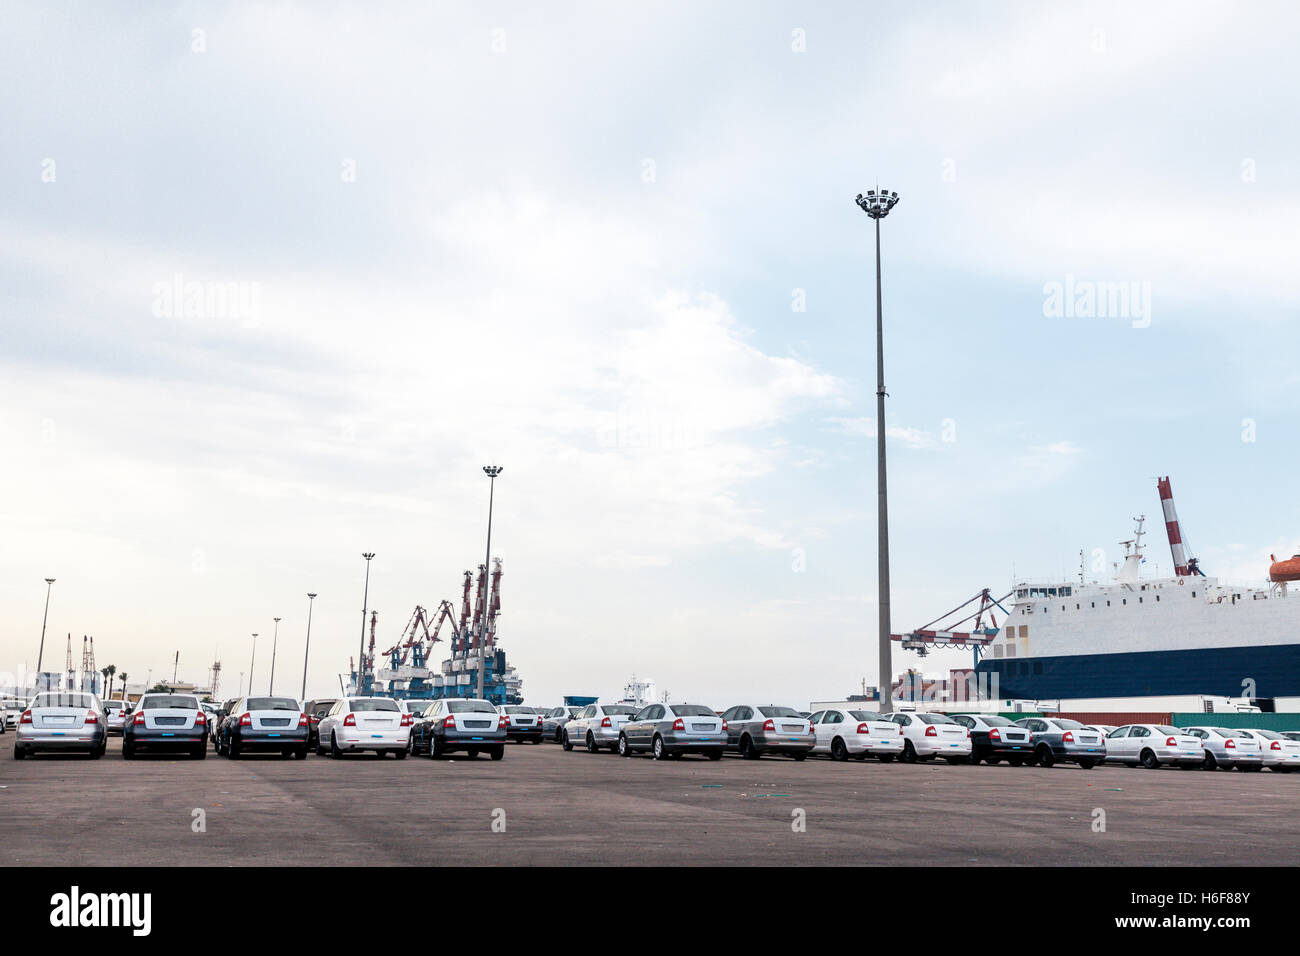 Spazio parcheggio pieno con nuove vetture che era appena stato scaricato dalla macchina freighter al loro porto di arrivo. Foto Stock